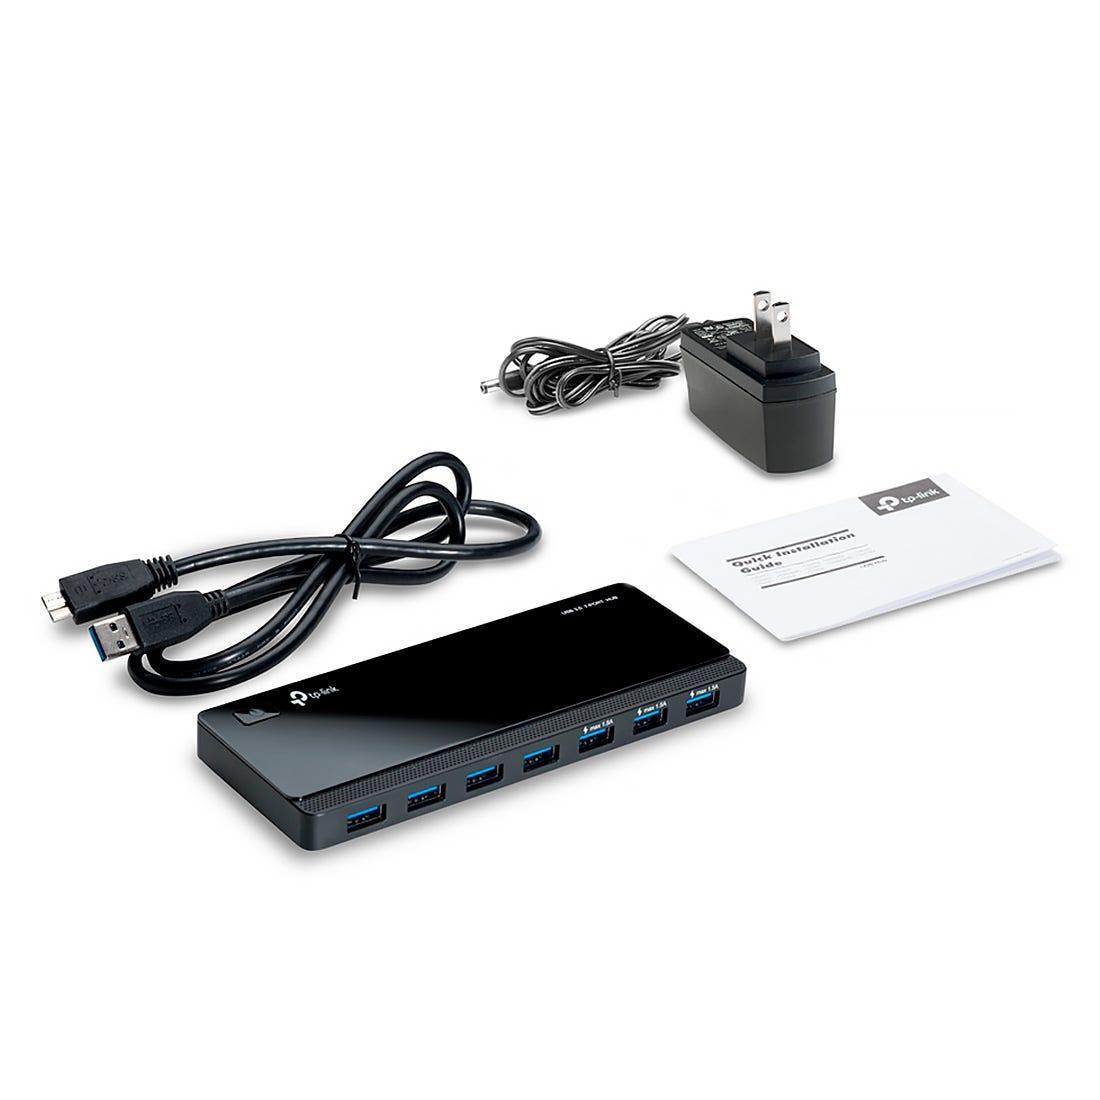 Hub TP-LINK USB 3.0 de 7 Portas UH700 - UH700 - Mega Market